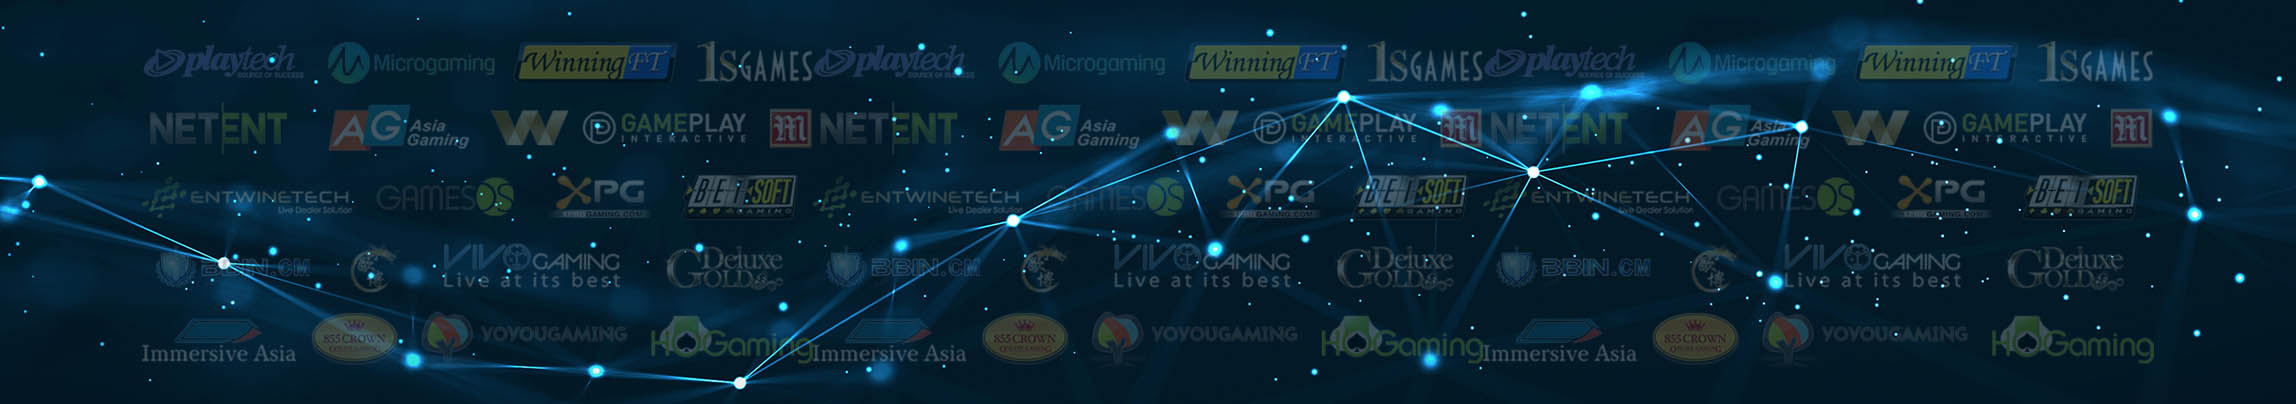 casino software logo